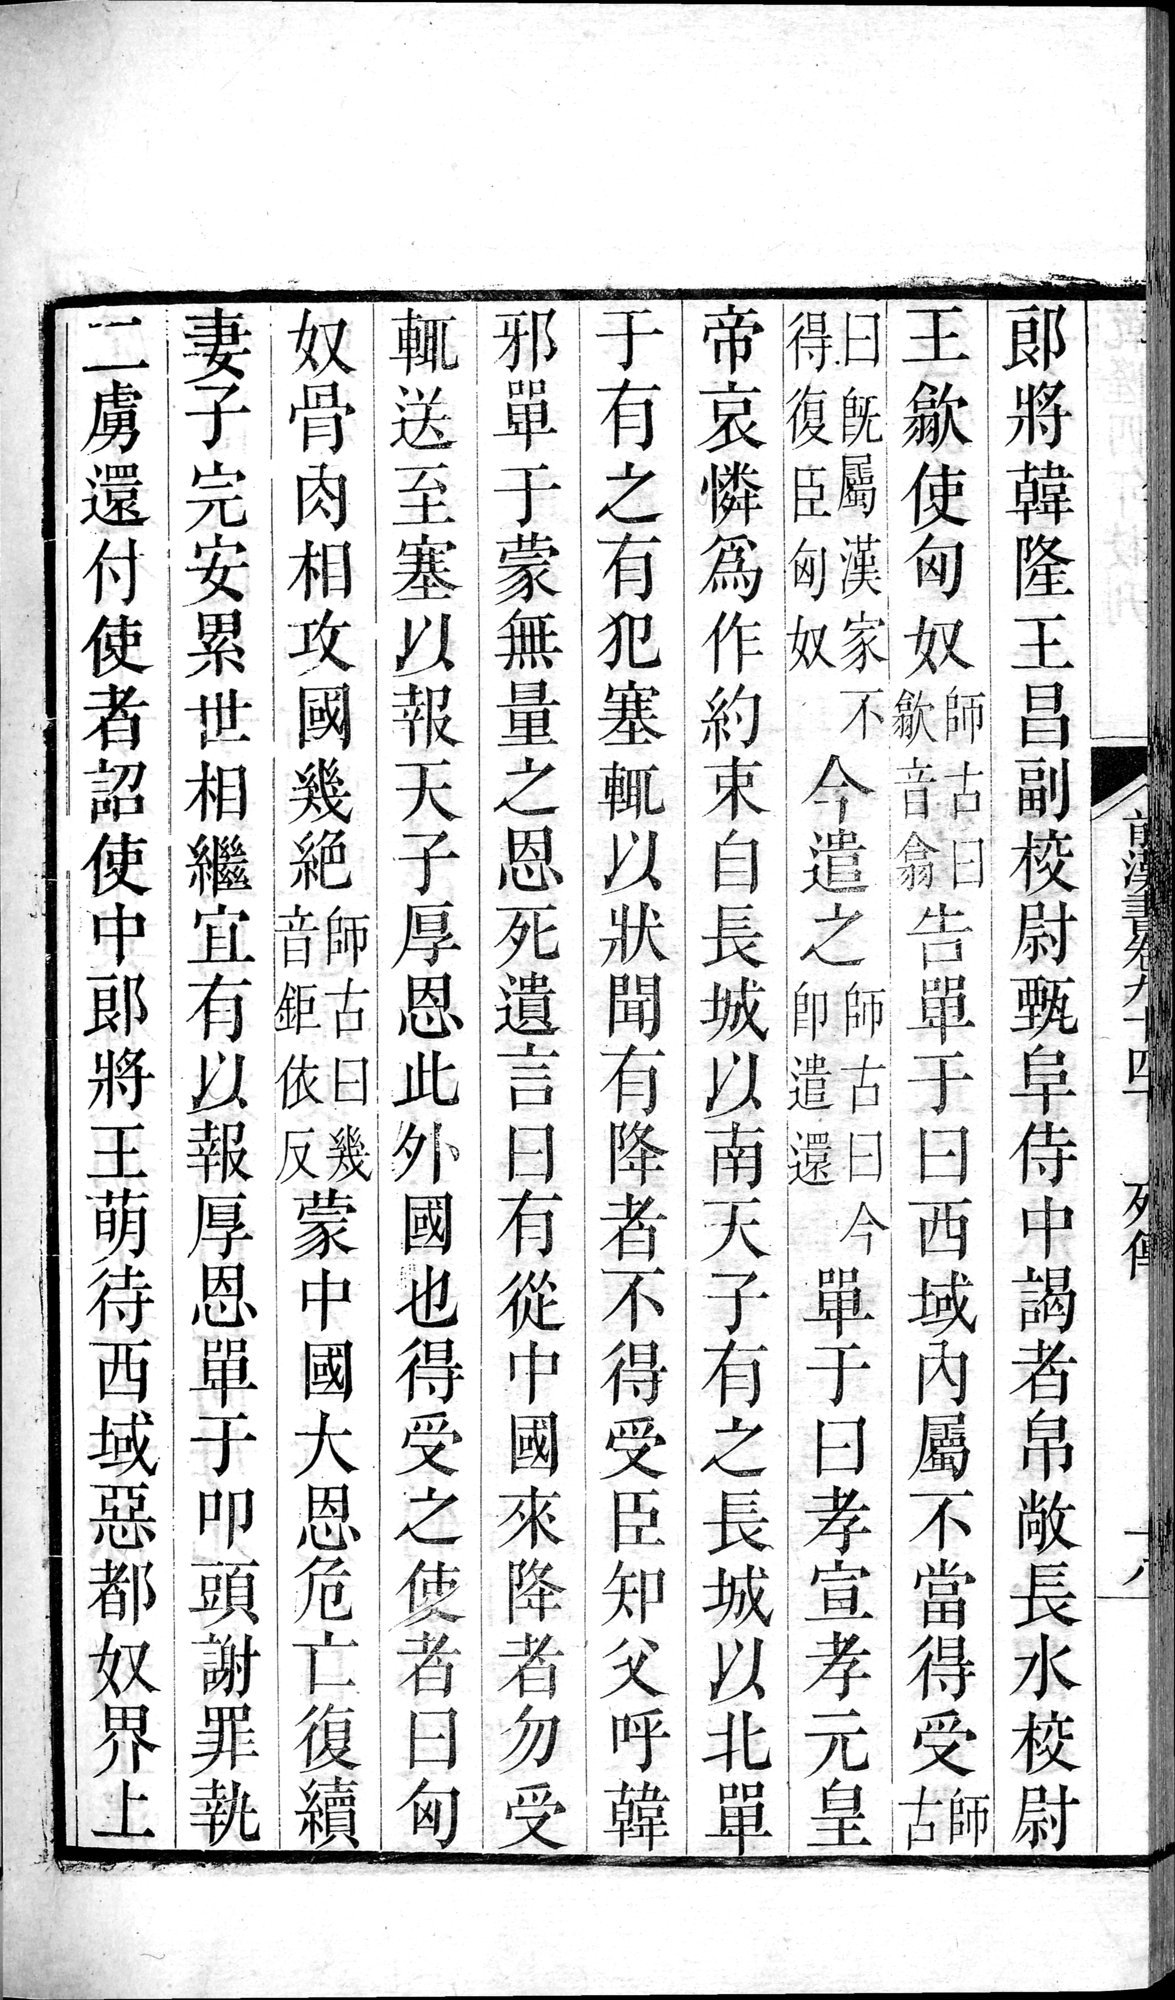 前漢書 : vol.94 bottom / Page 36 (Grayscale High Resolution Image)